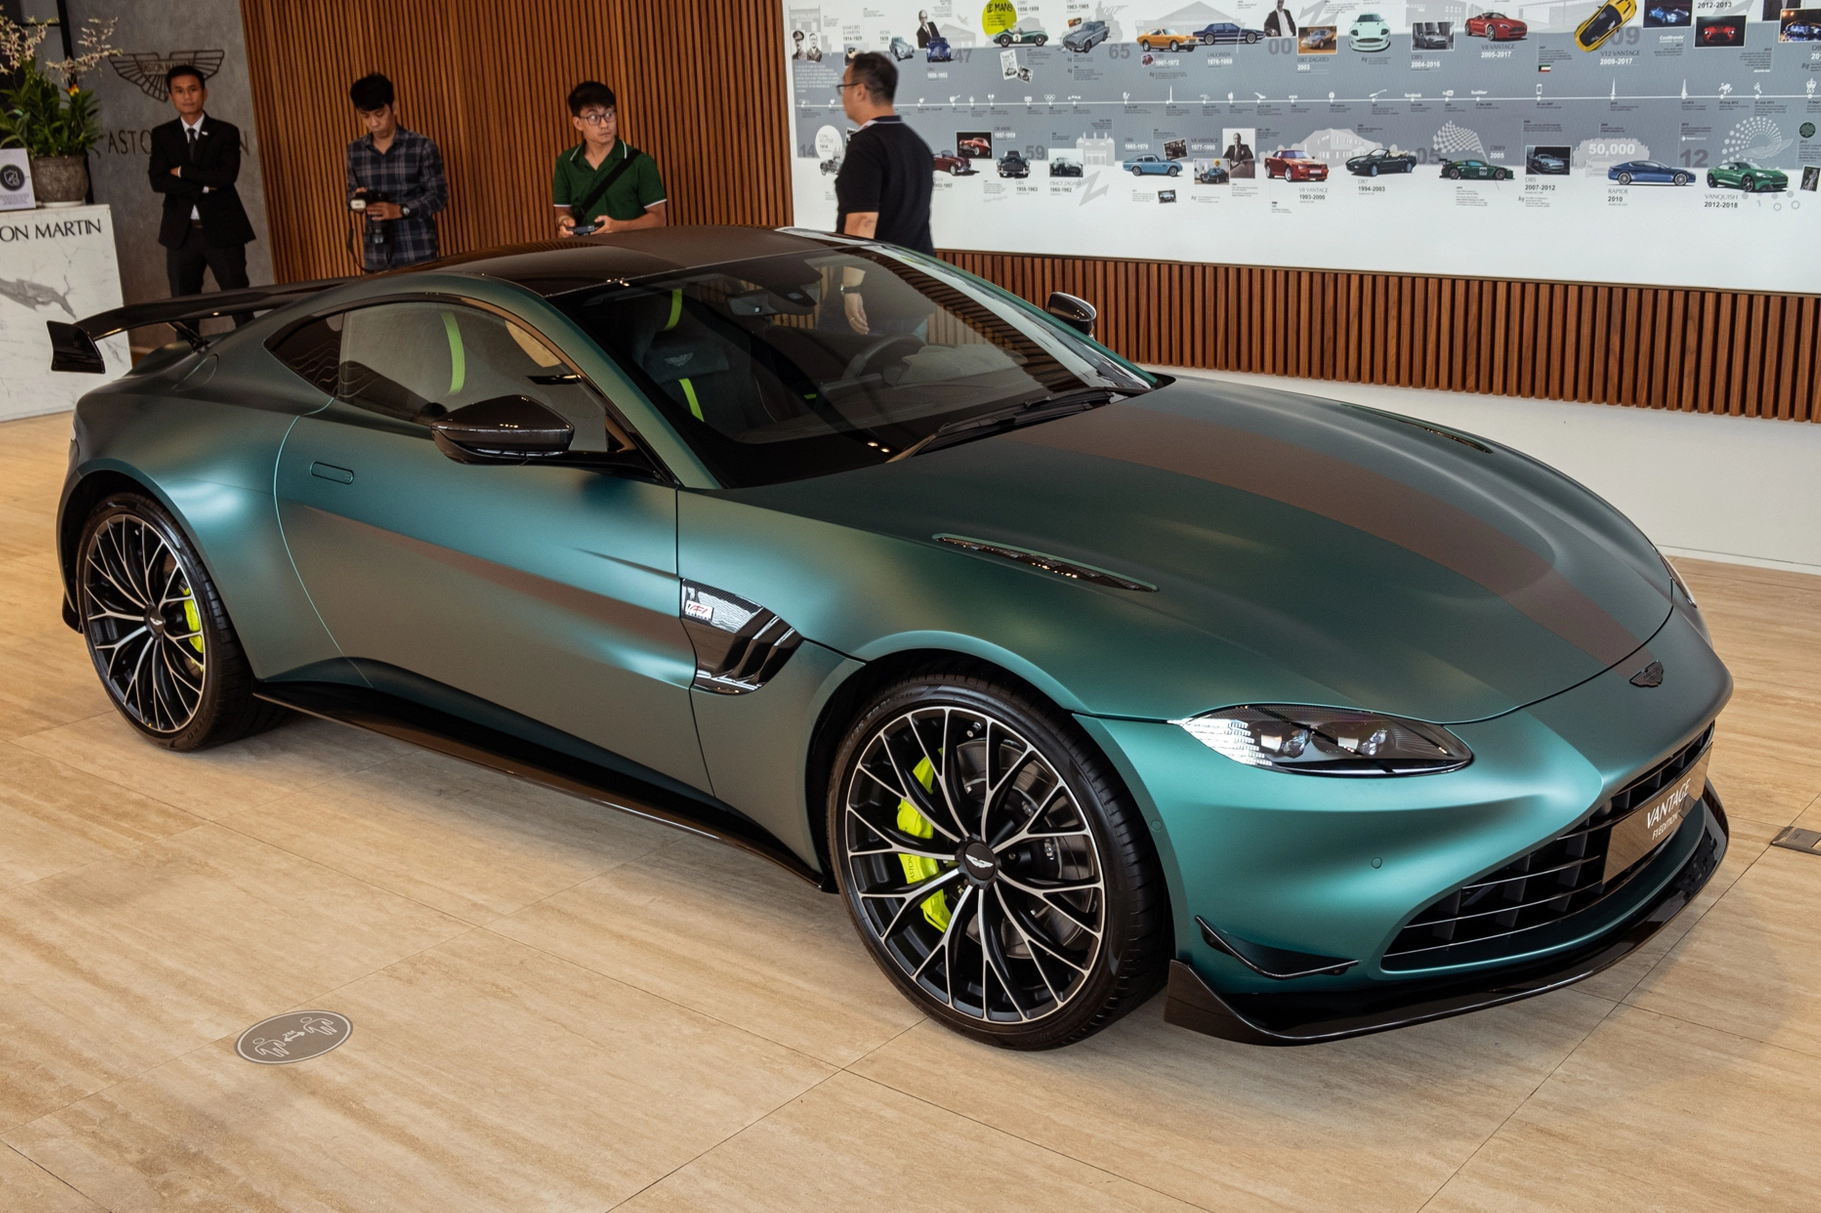 Aston Martin Vantage F1 Edition hàng độc giá 18,8 tỷ đồng được xác nhận về chung garage với dàn siêu xe trăm tỷ nổi tiếng nhất Việt Nam